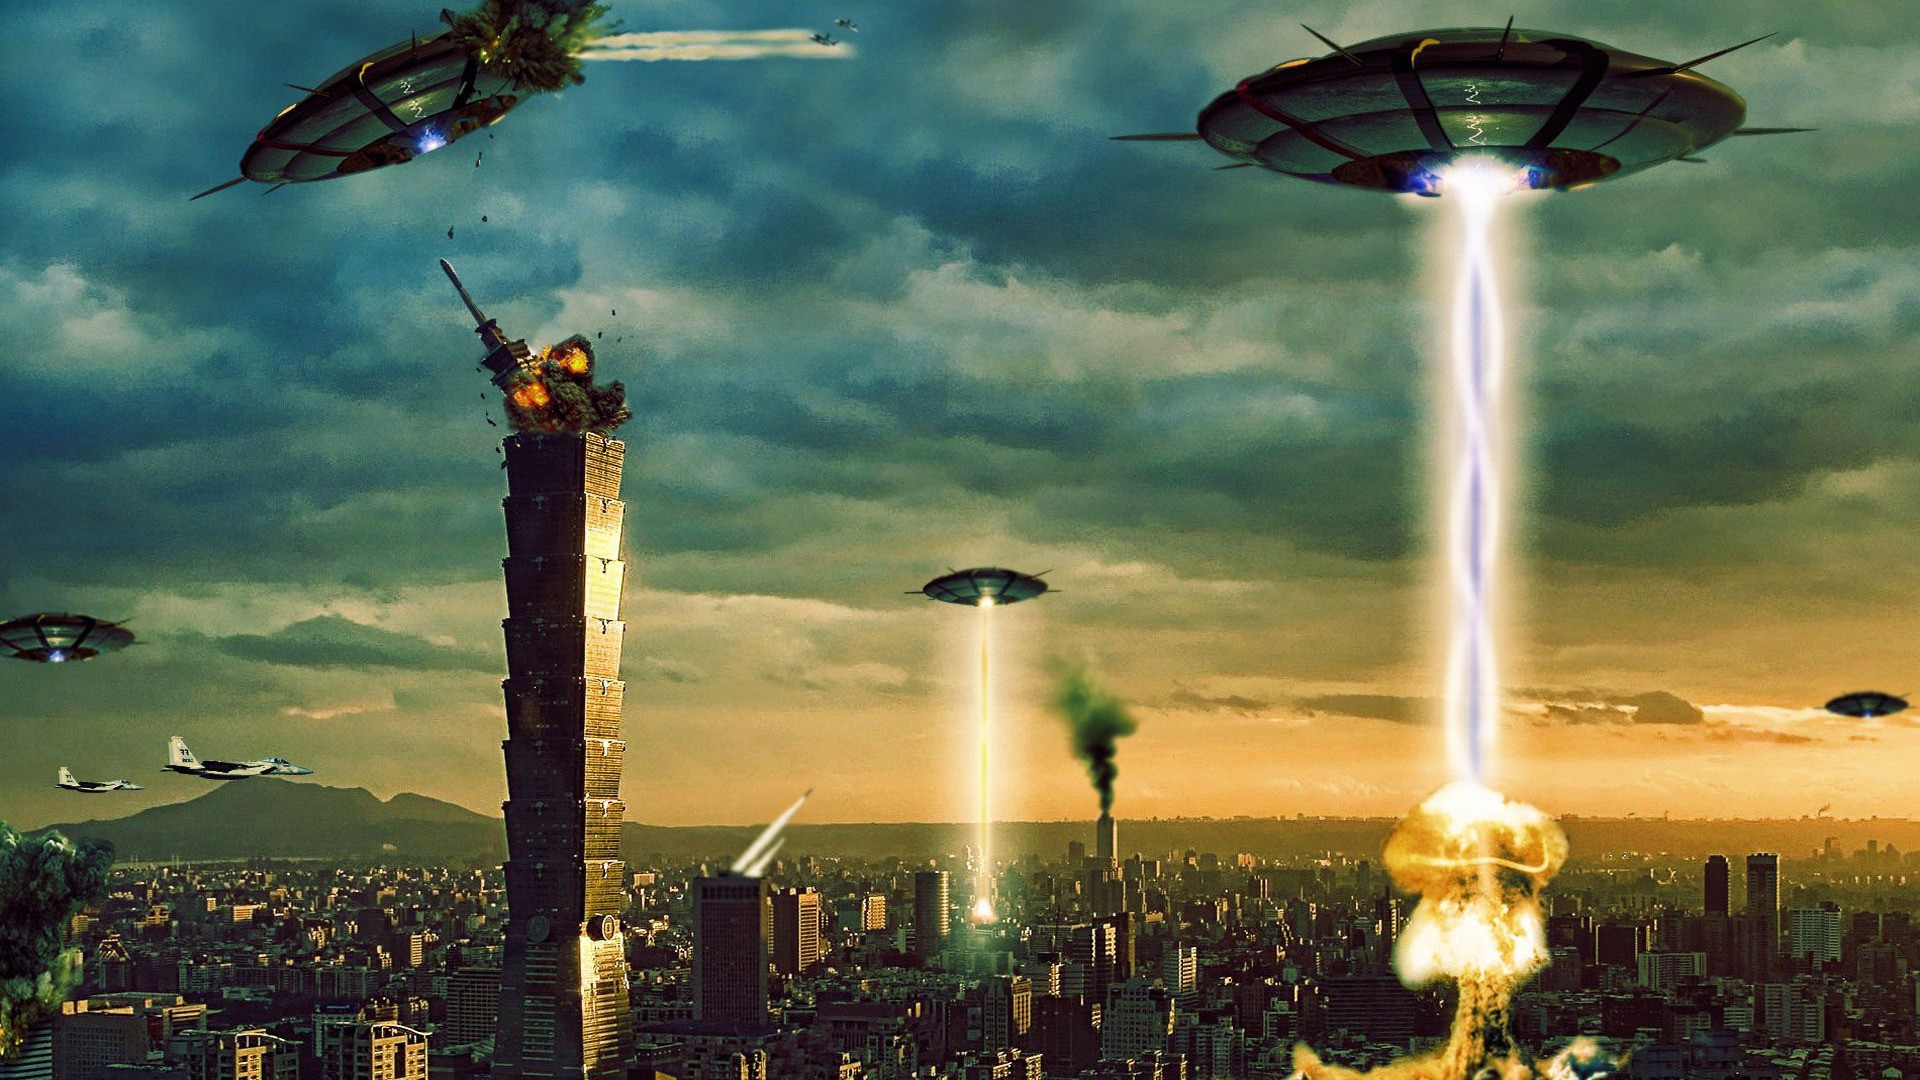 Aliens Digital Art Fantasy Art Destruction UFOs 1920x1080